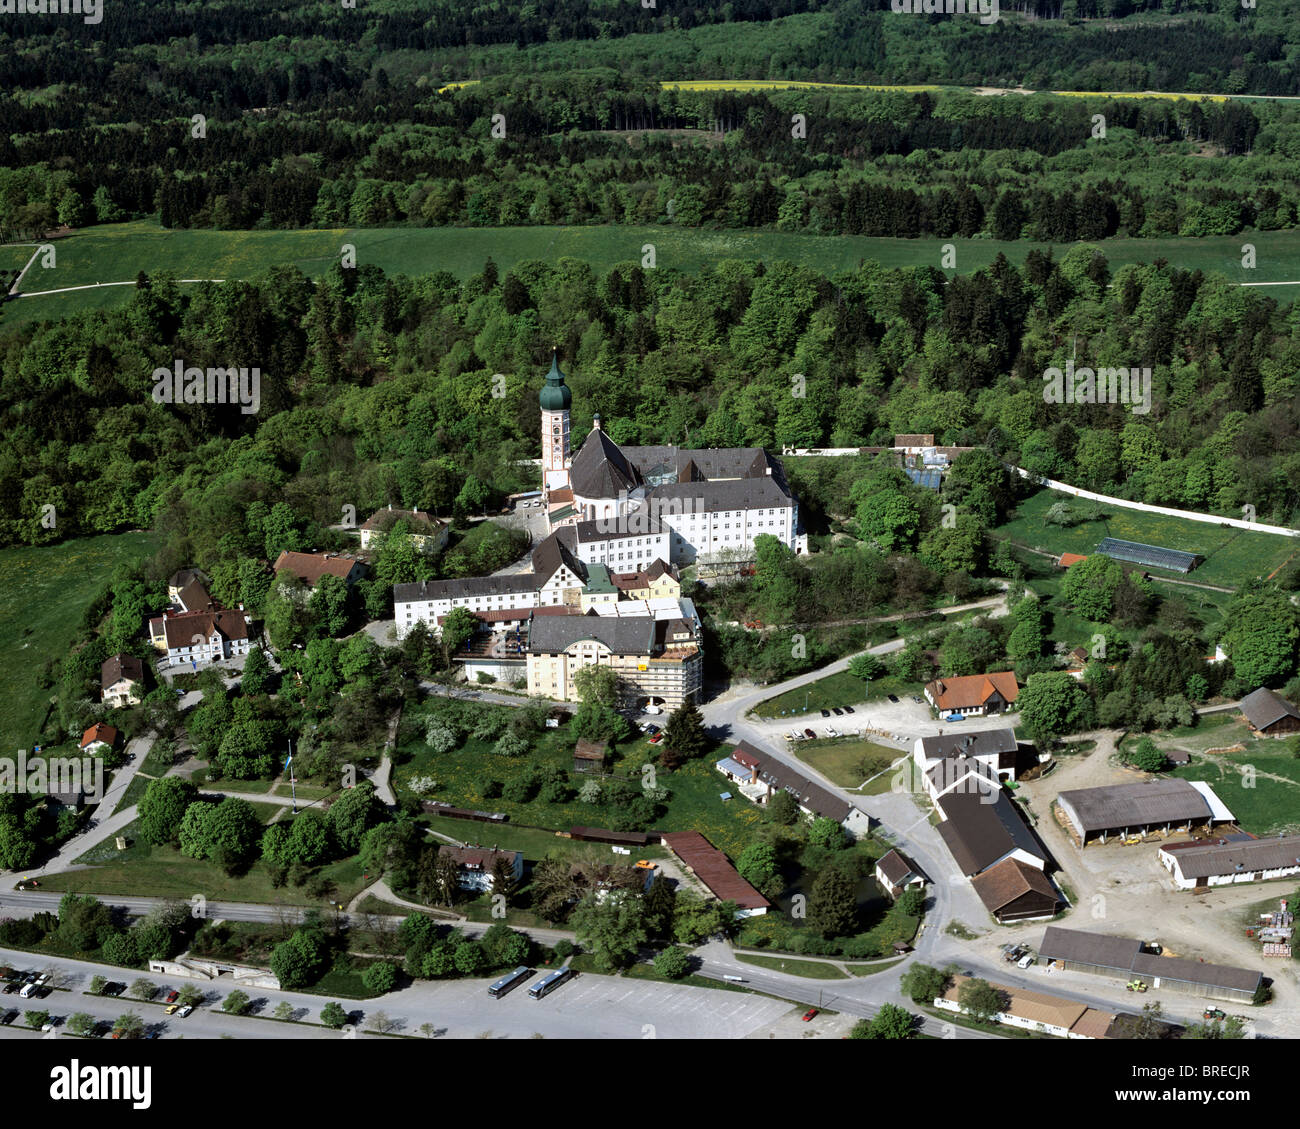 Kloster Andechs Monastère, lieu de pèlerinage, prieuré bénédictin, Upper Bavaria, Germany, Europe, vue aérienne Banque D'Images